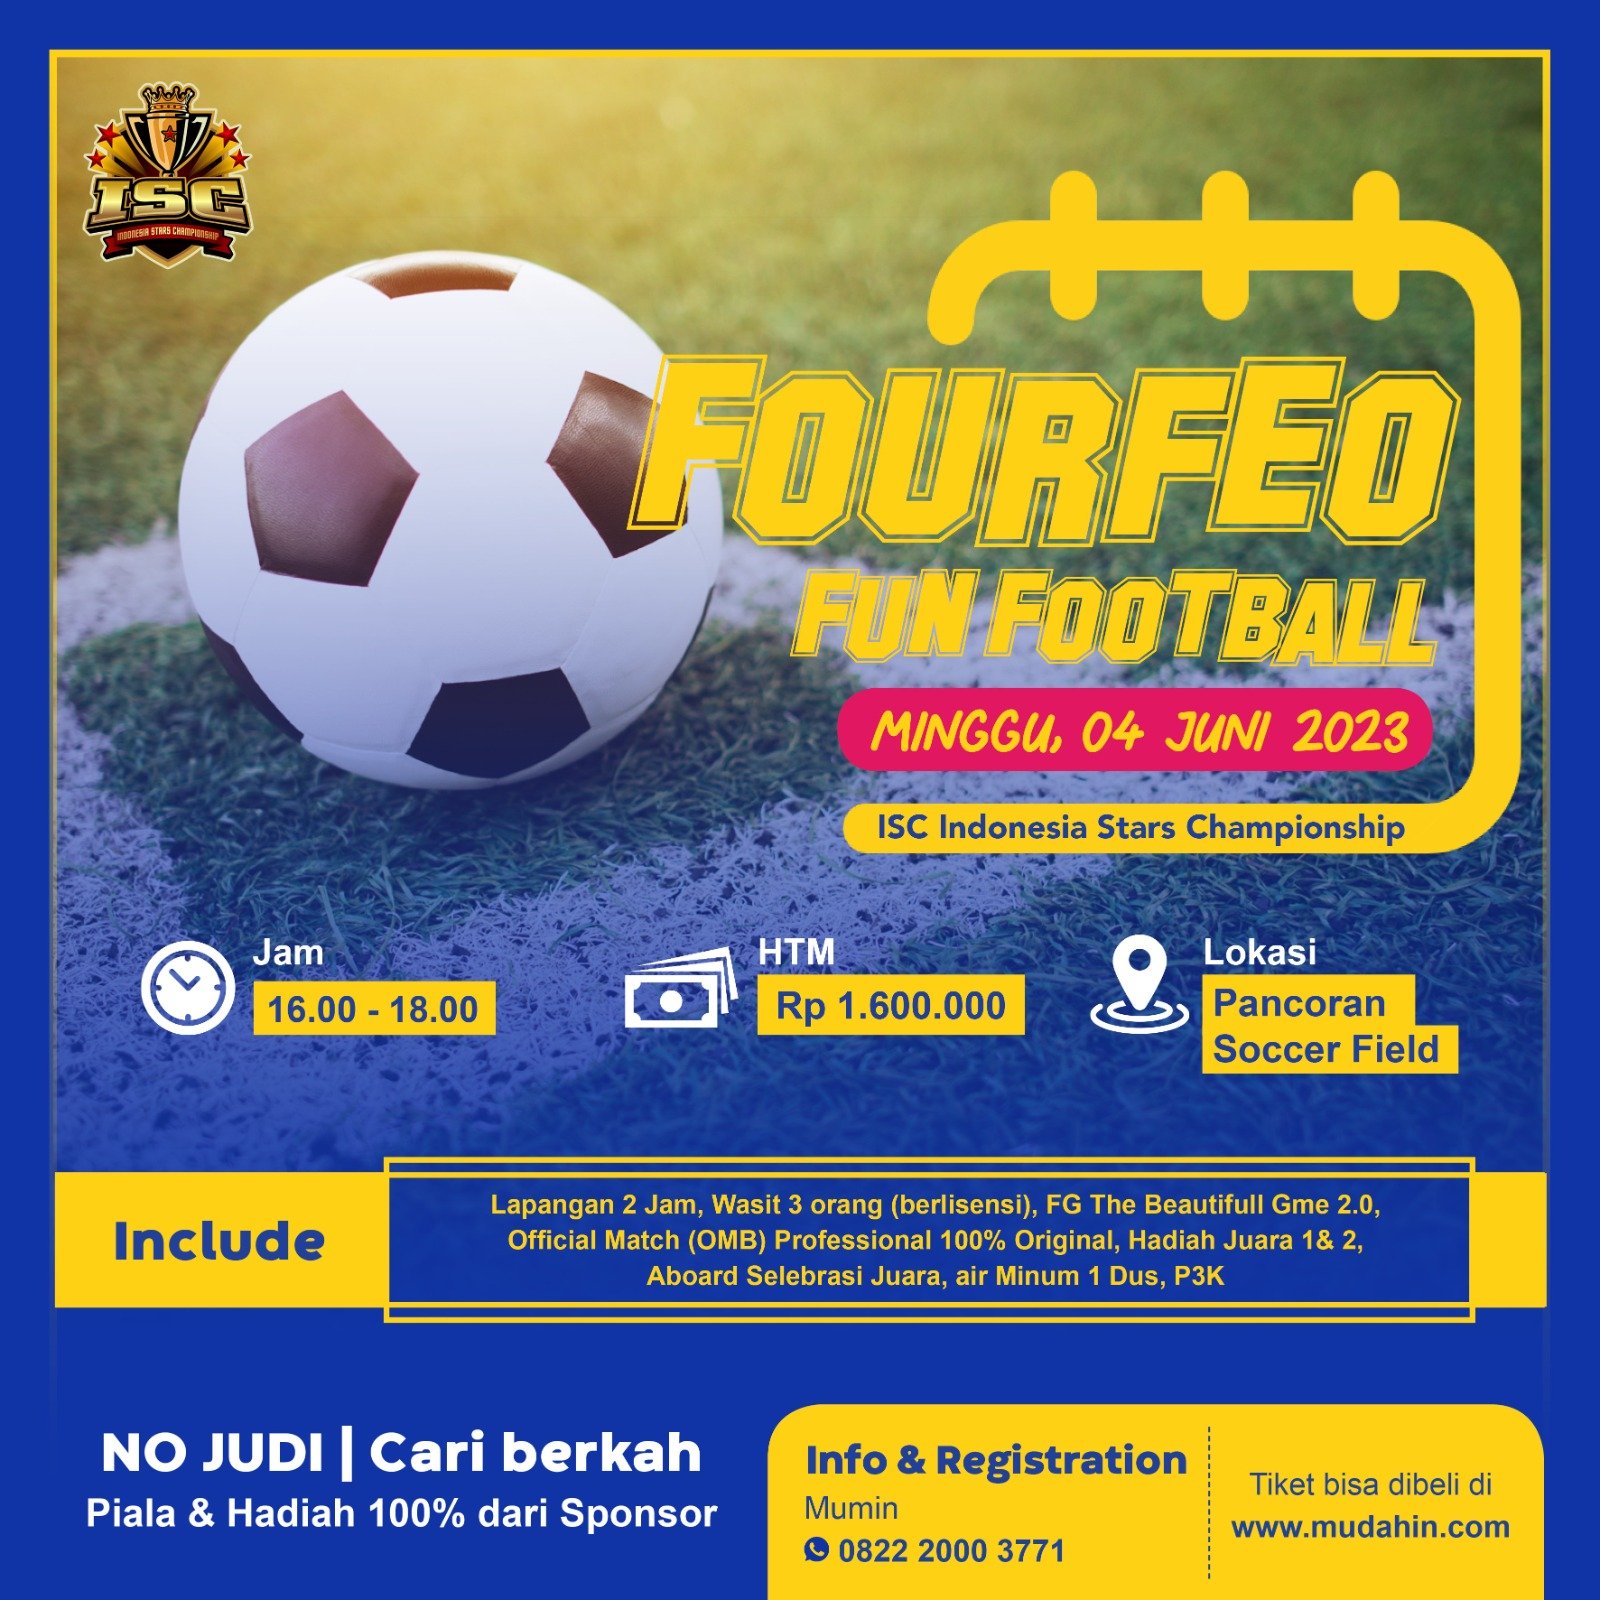 ISC Fourfeo Fun Football, Minggu 04 Juni 2023